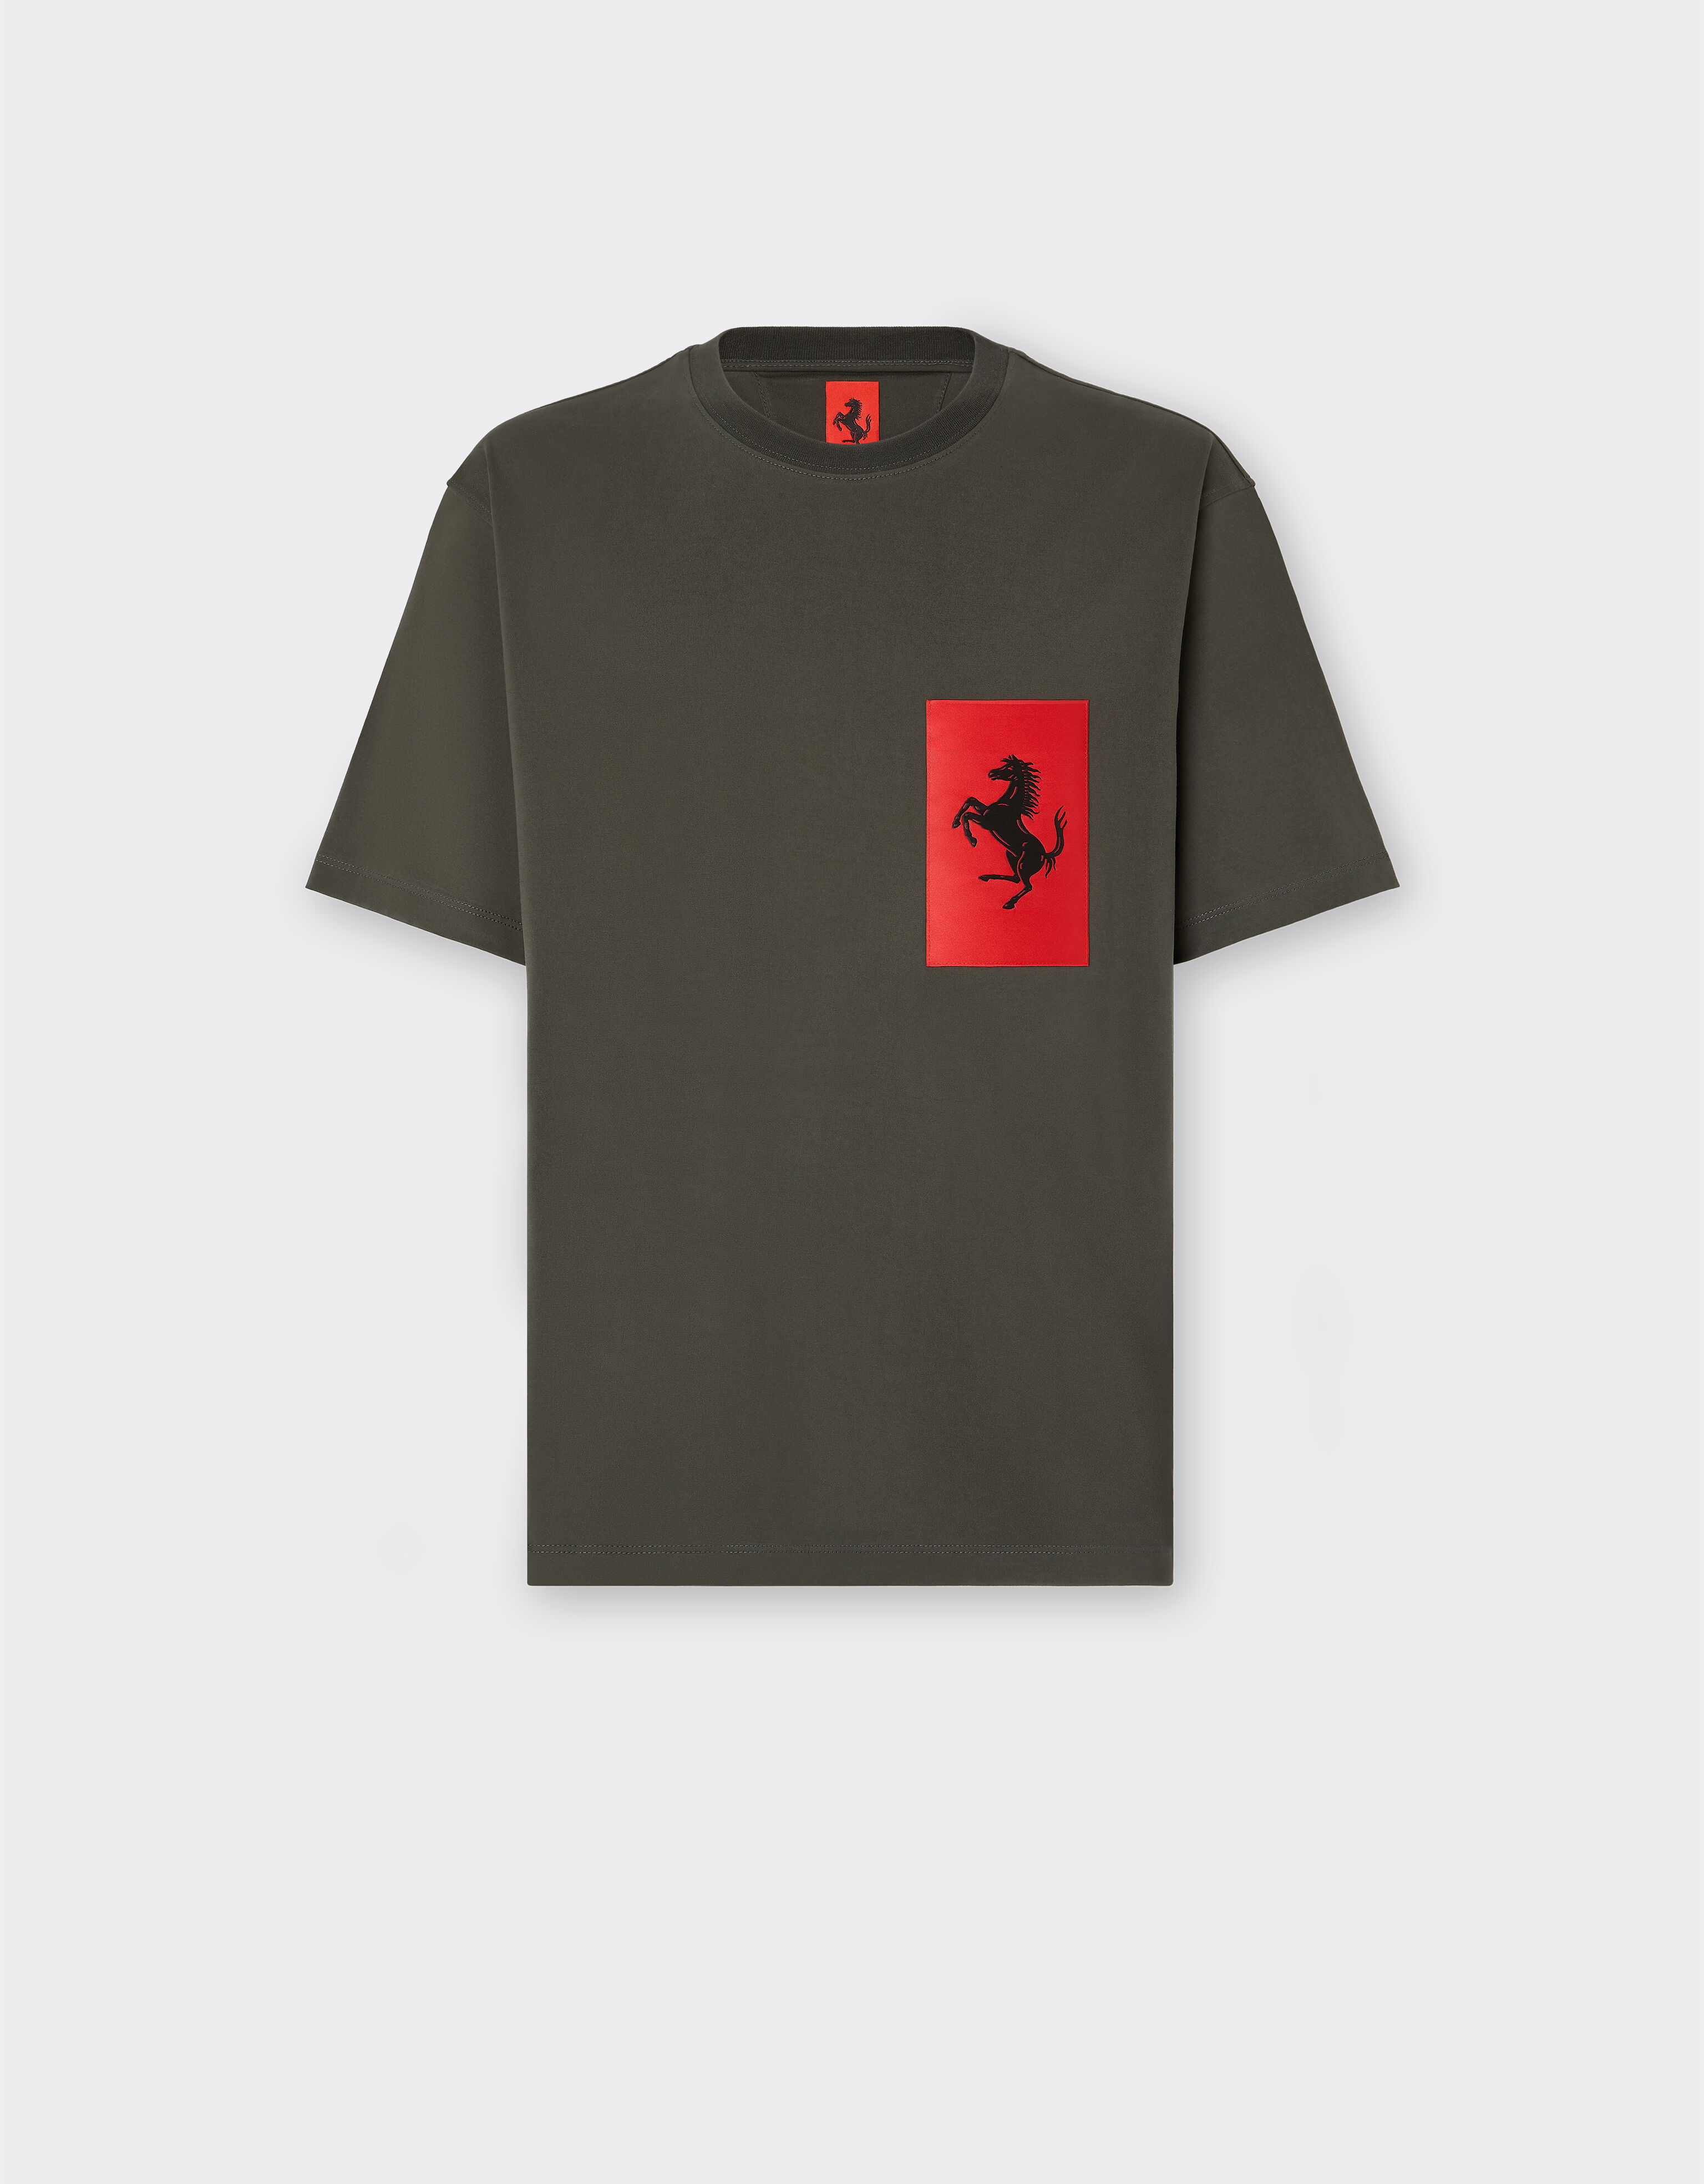 Ferrari T-shirt in cotone con tasca Cavallino Rampante Militare 47824f